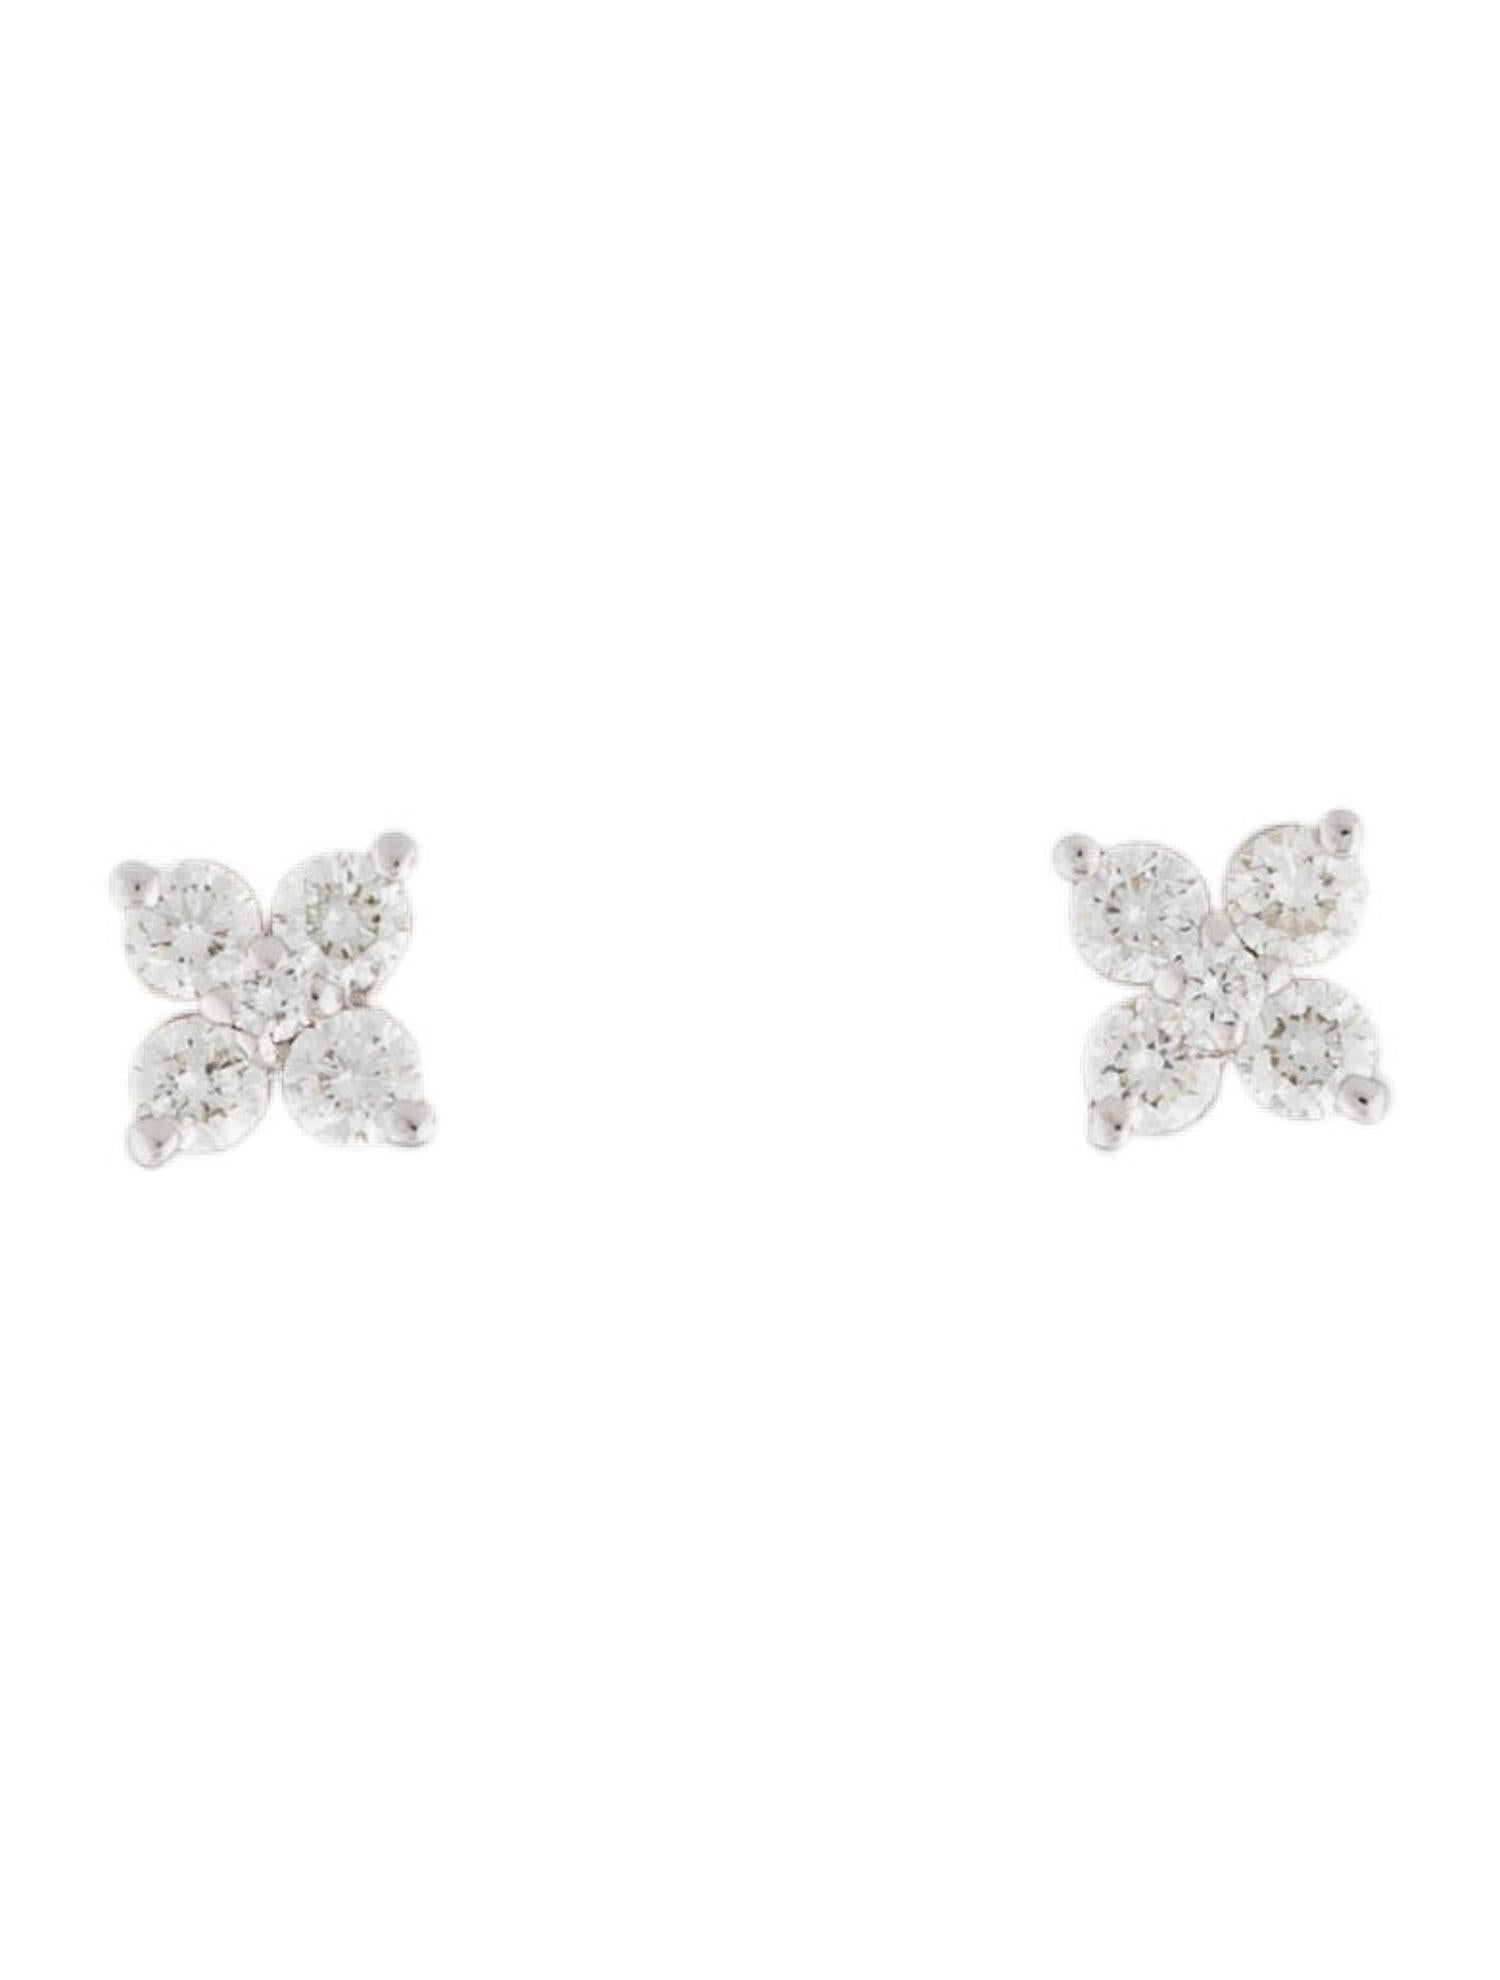 Qualität Ohrringe Set: Hergestellt aus echtem 14k Gold und 10 runde Diamanten auf jedem Ohrring ca. 0,32 ct; Diamond Color & Clarity ist GH-SI Certified Diamanten mit einem Schmetterling Push-Backs für die Schließung
 Überraschen Sie Ihre Liebsten